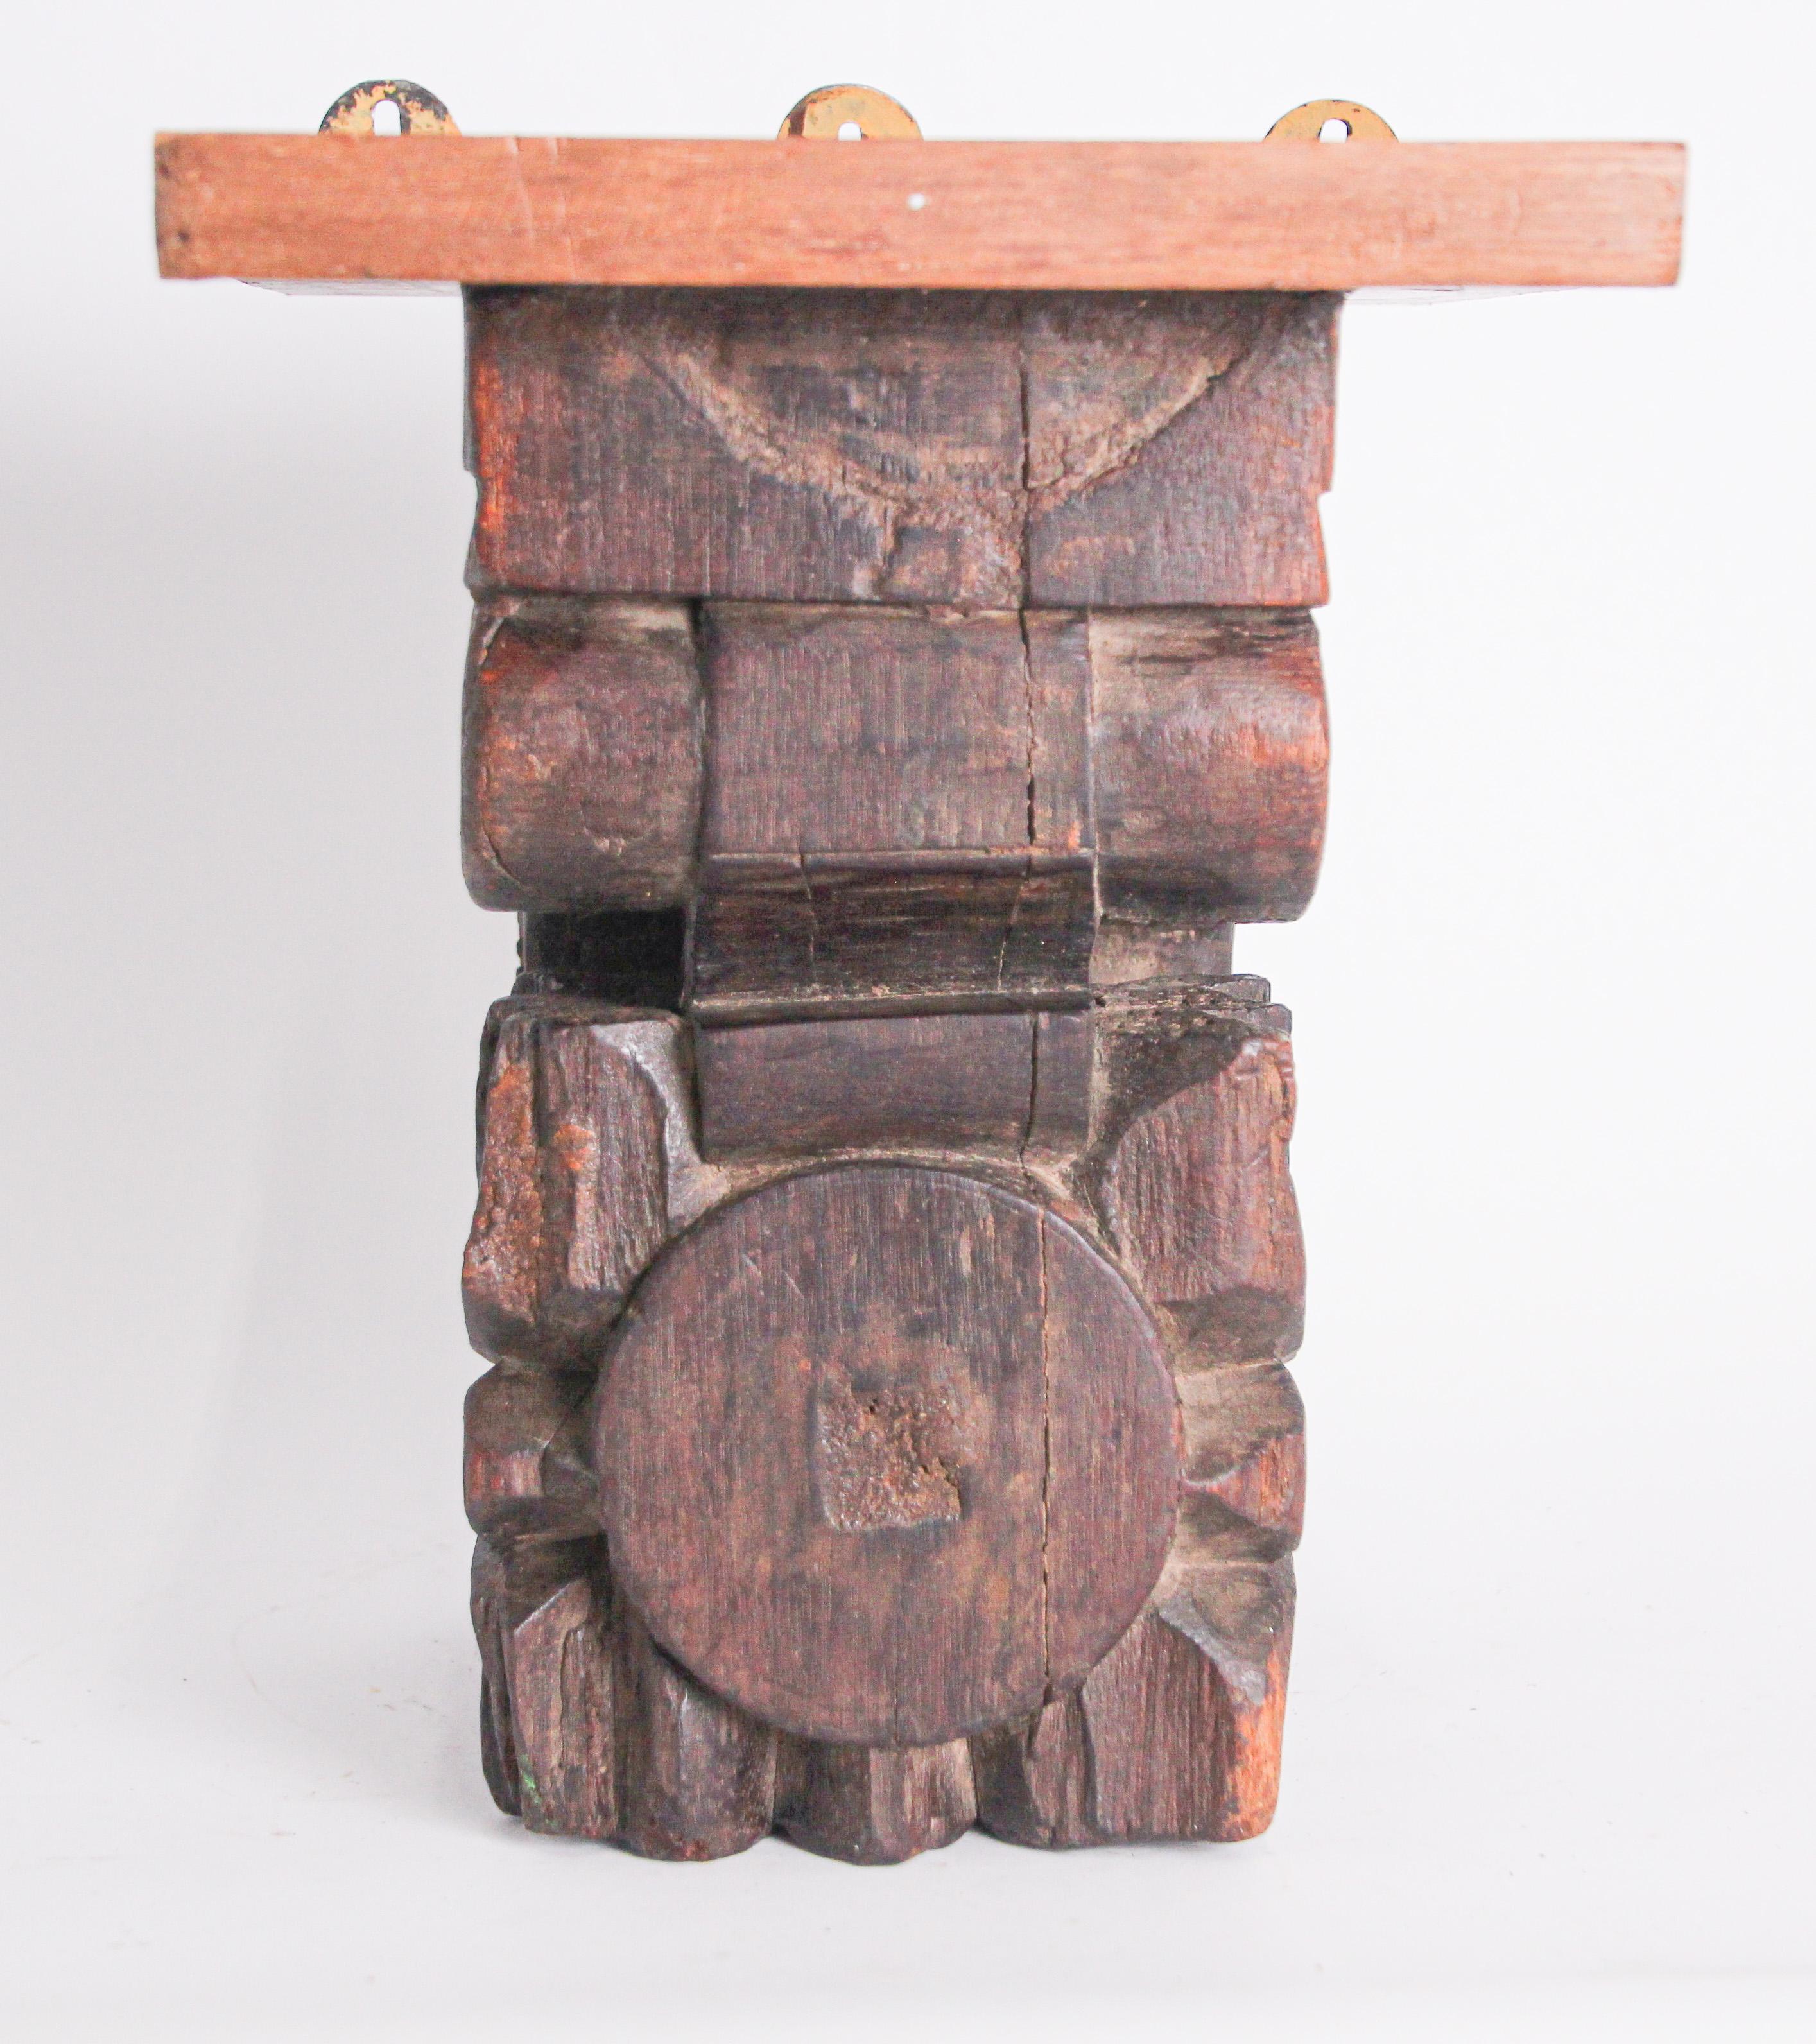 Fragment de ferme de temple en bois sculpté d'architecture ancienne provenant du Rajasthan, en Inde.
fragment de temple hindou du 19ème siècle. Ce fragment antique était des éléments d'une section de frise en bois sculpté à la main, dans un temple